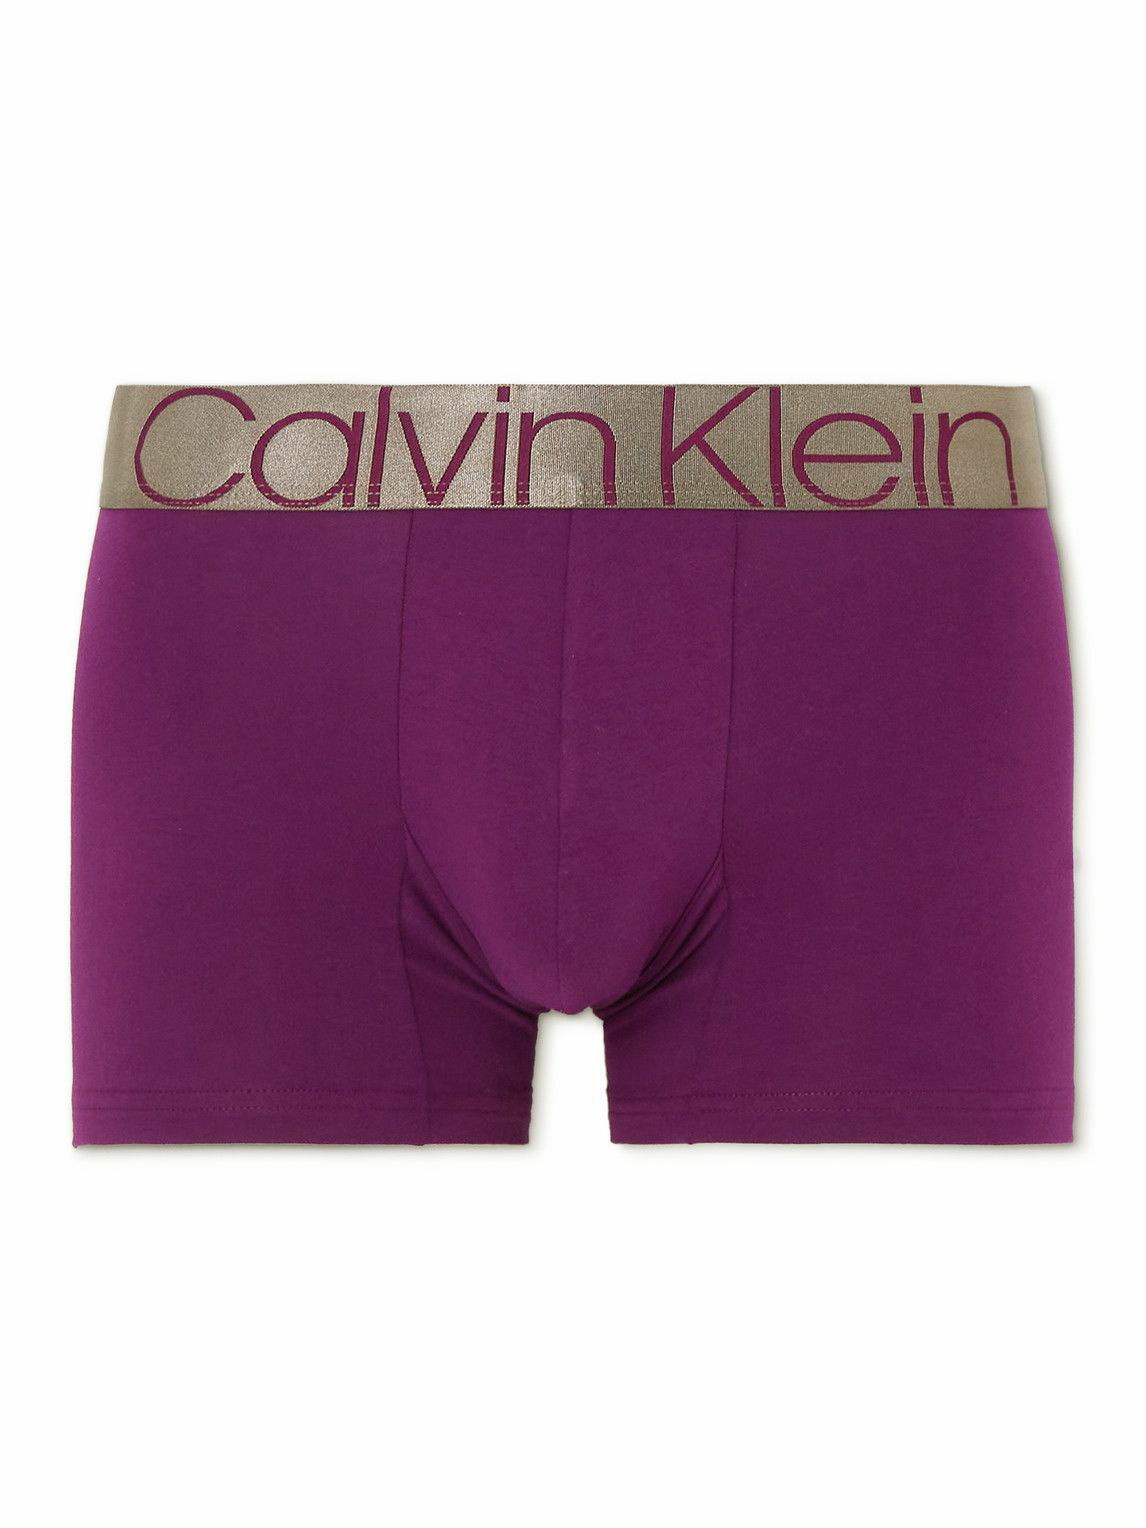 CALVIN KLEIN UNDERWEAR - The Pride Edit Stretch-Cotton Briefs